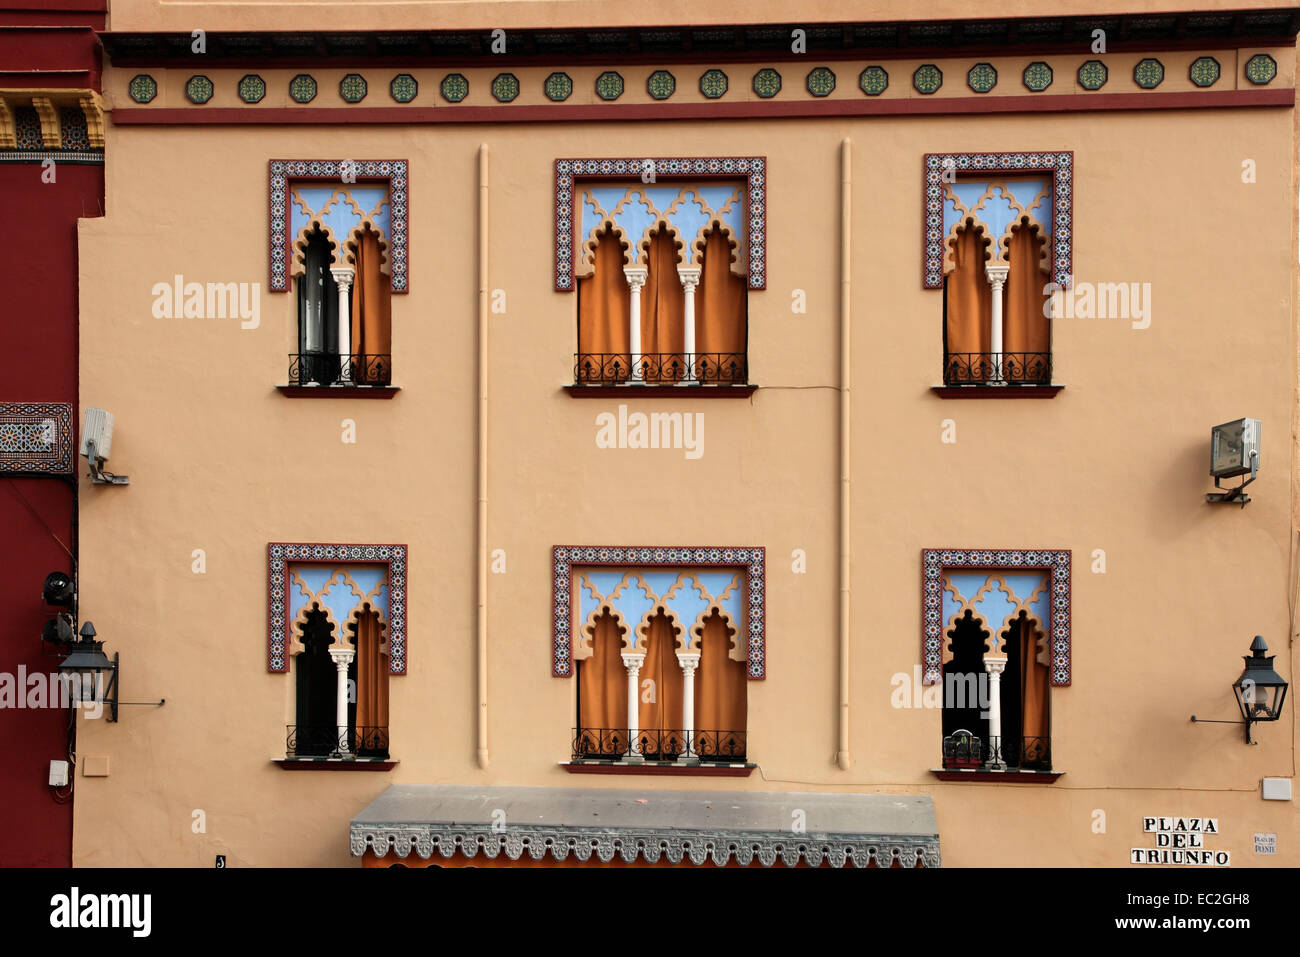 Moorish facade in Plaza del Triunto Cordoba. Stock Photo